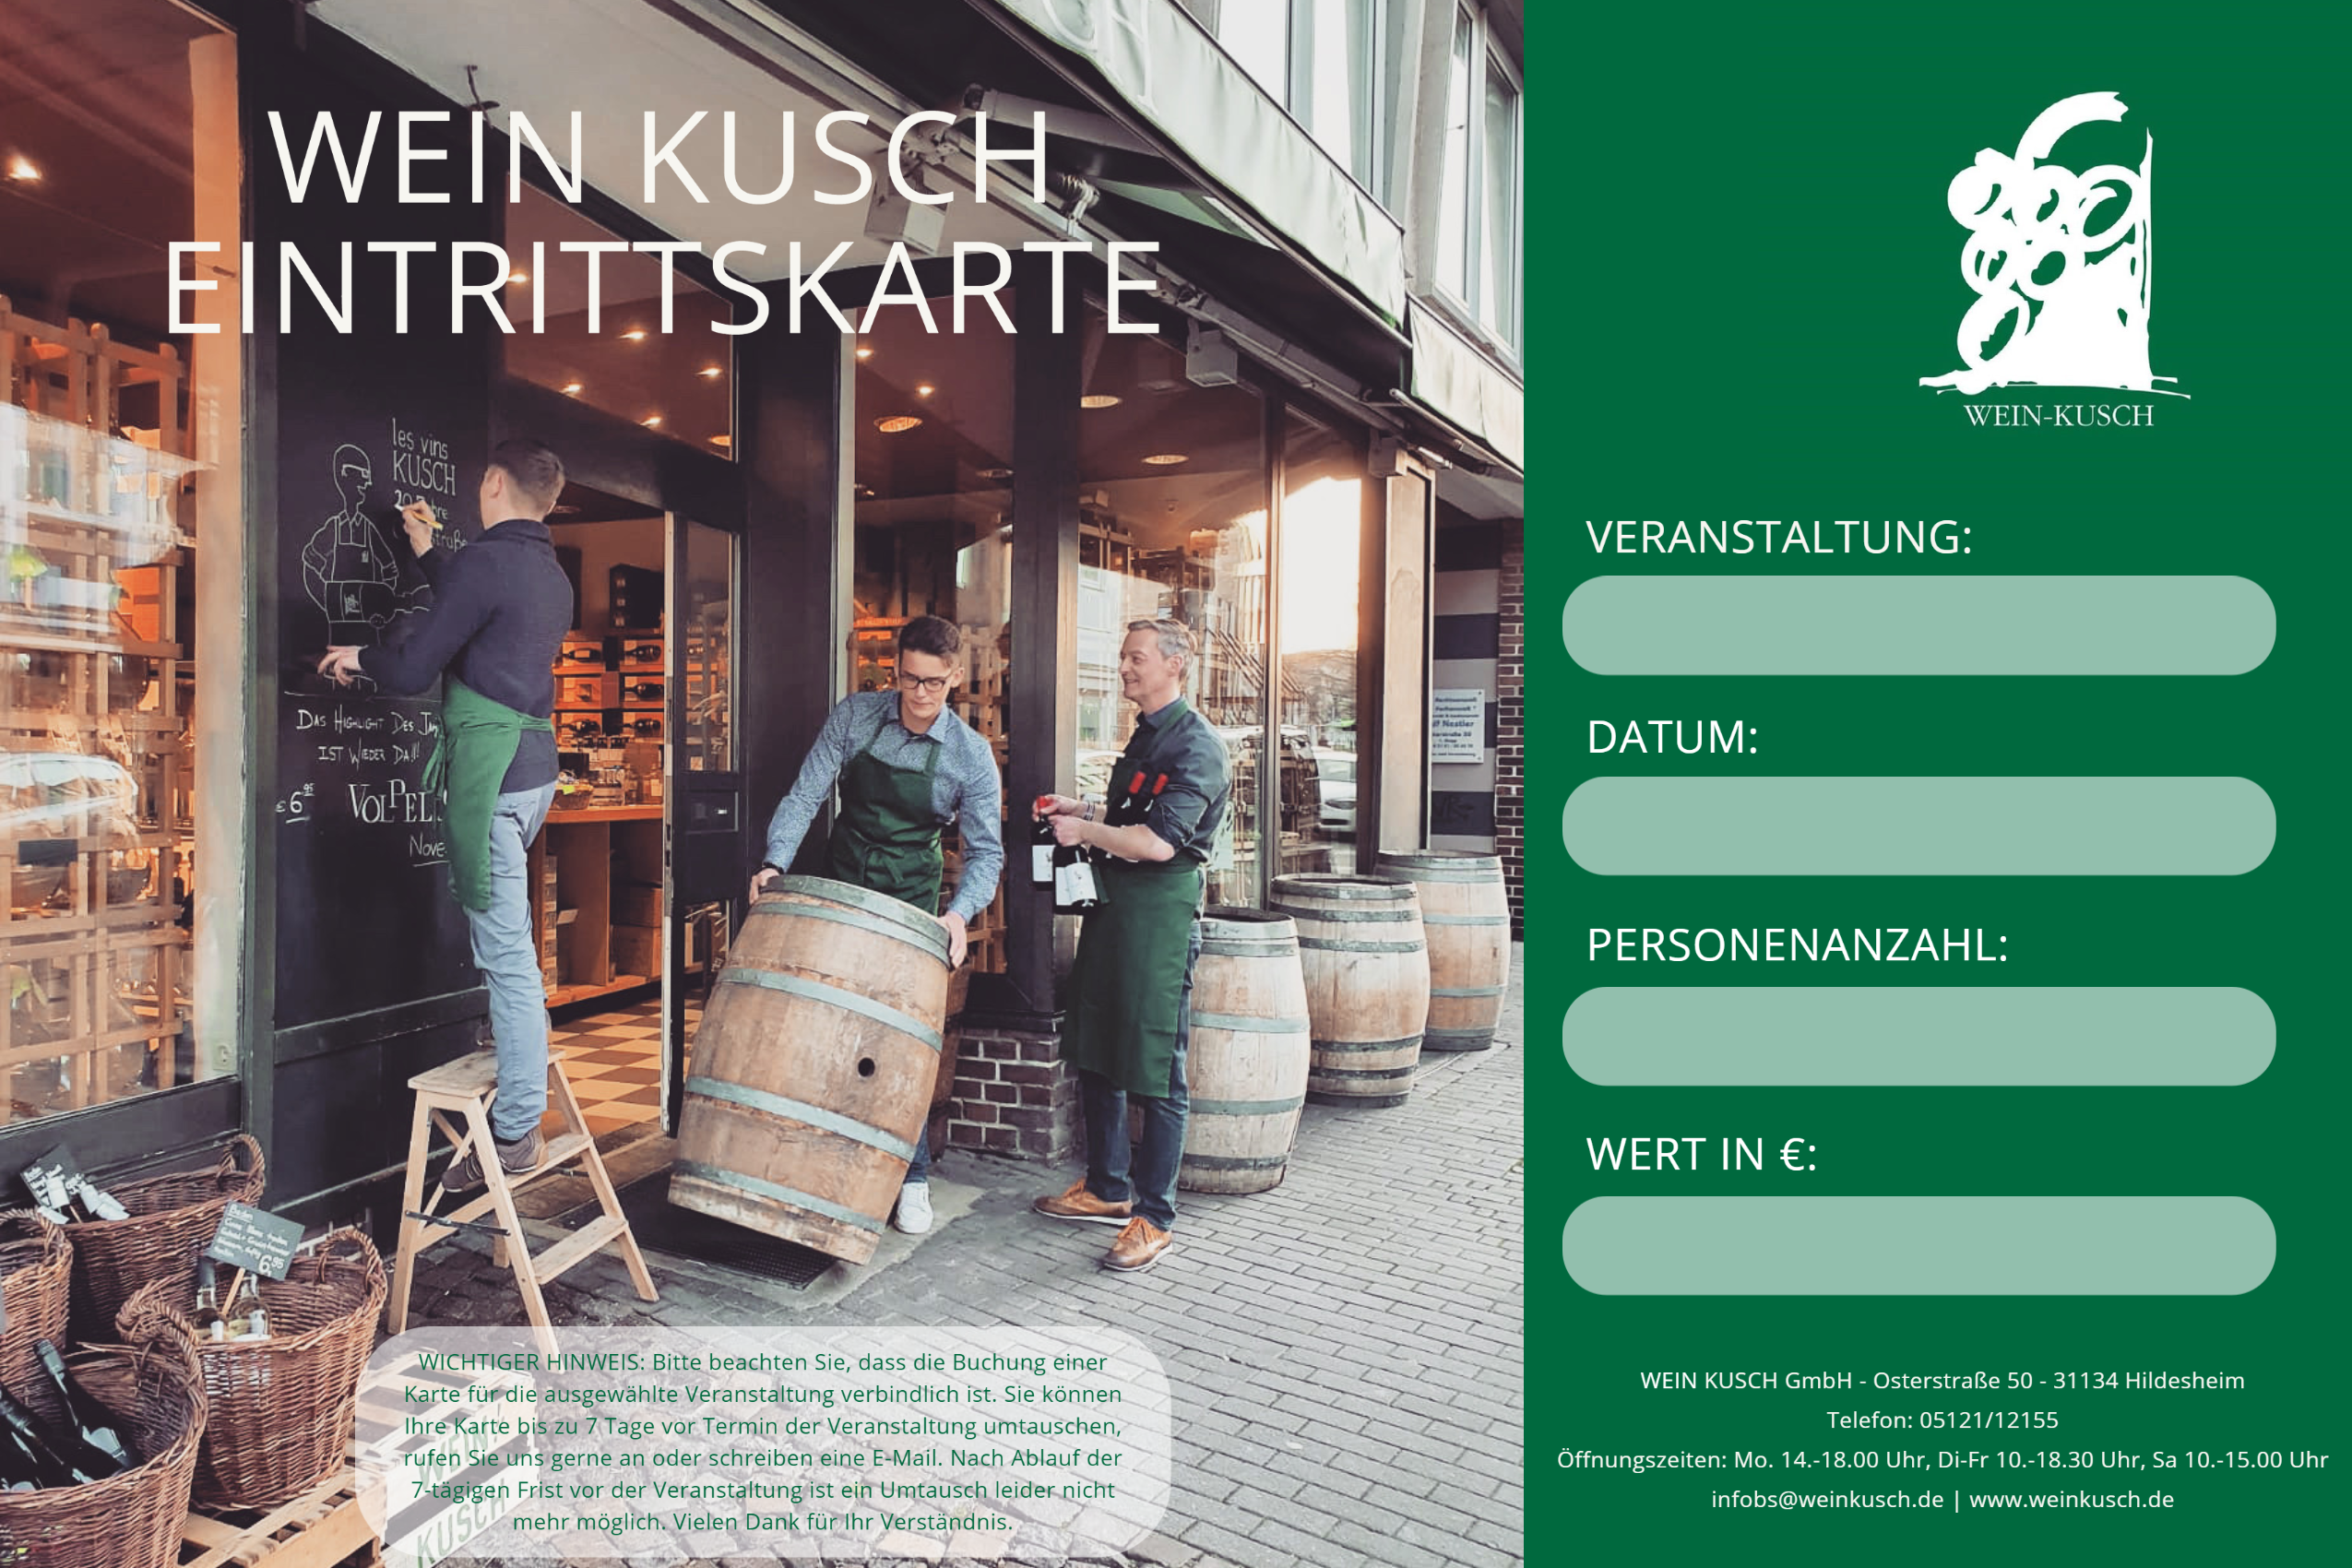 2023.10.20 - Whisky Tasting "Schottland Reise" in Hildesheim 19.00 Uhr